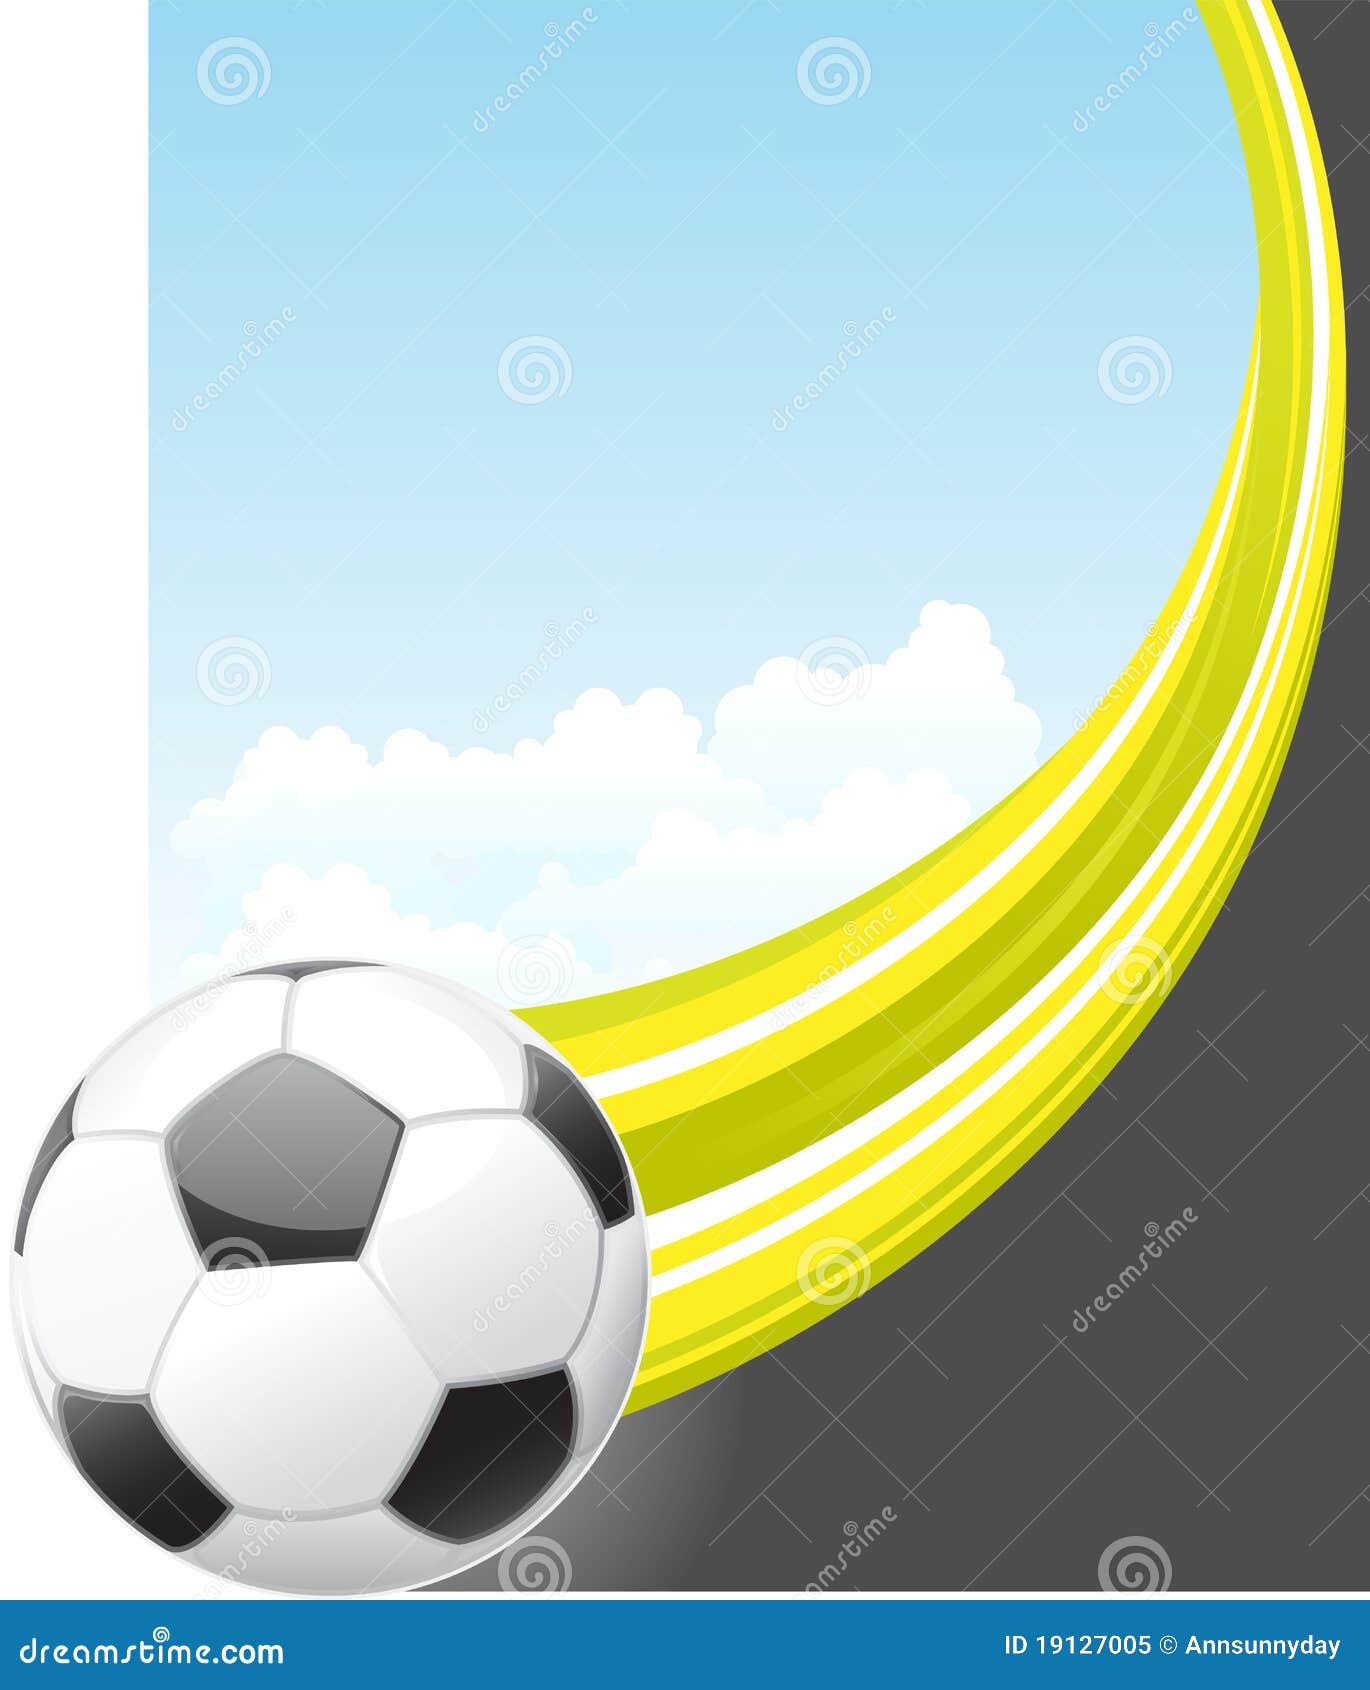 Soccer Poster Stock Vector Illustration Of Soccer Ball